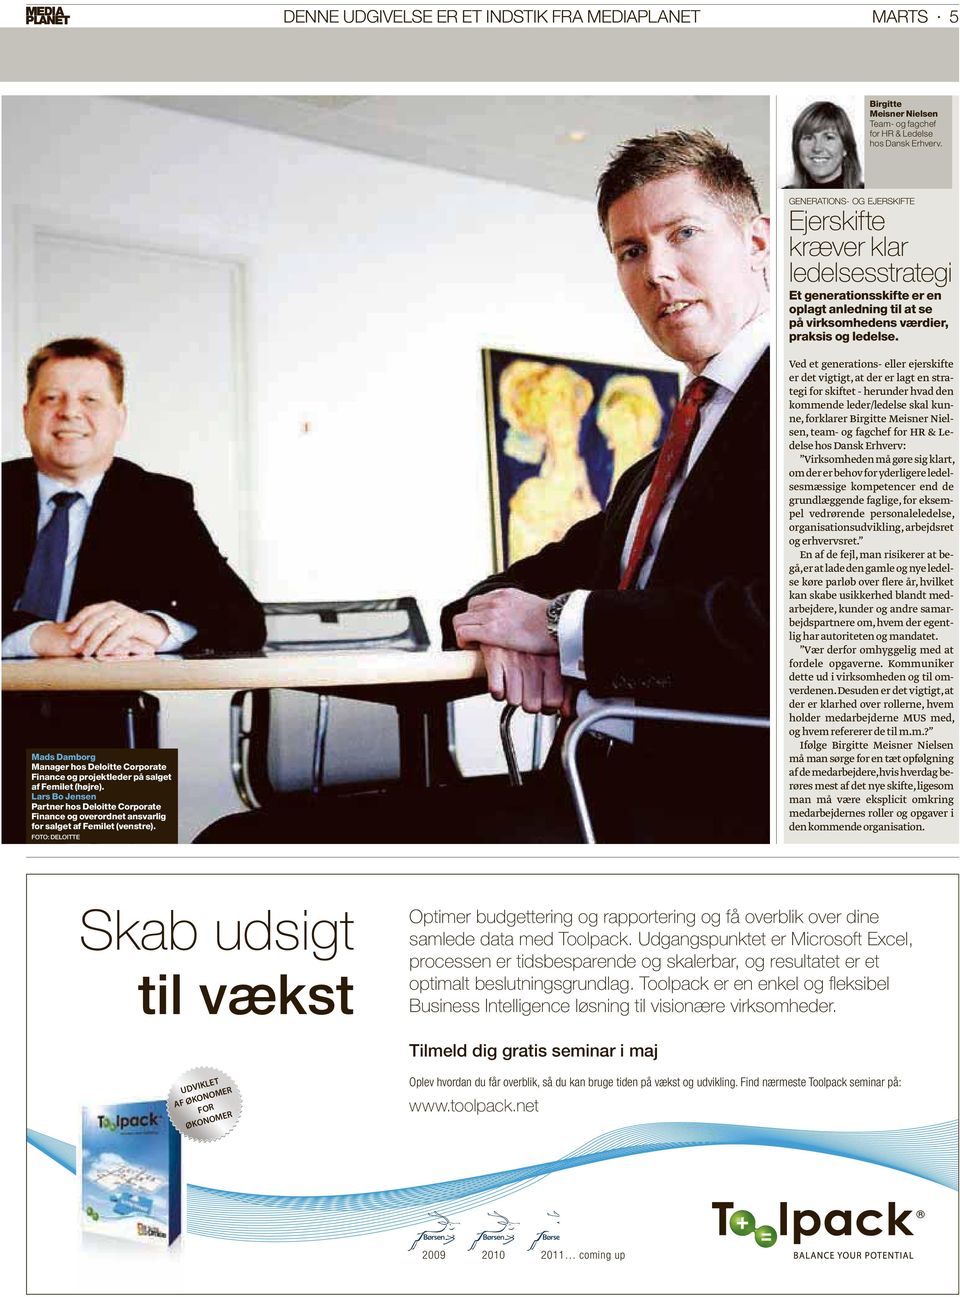 Mads Damborg Manager hos Deloitte Corporate Finance og projektleder på salget af Femilet (højre).